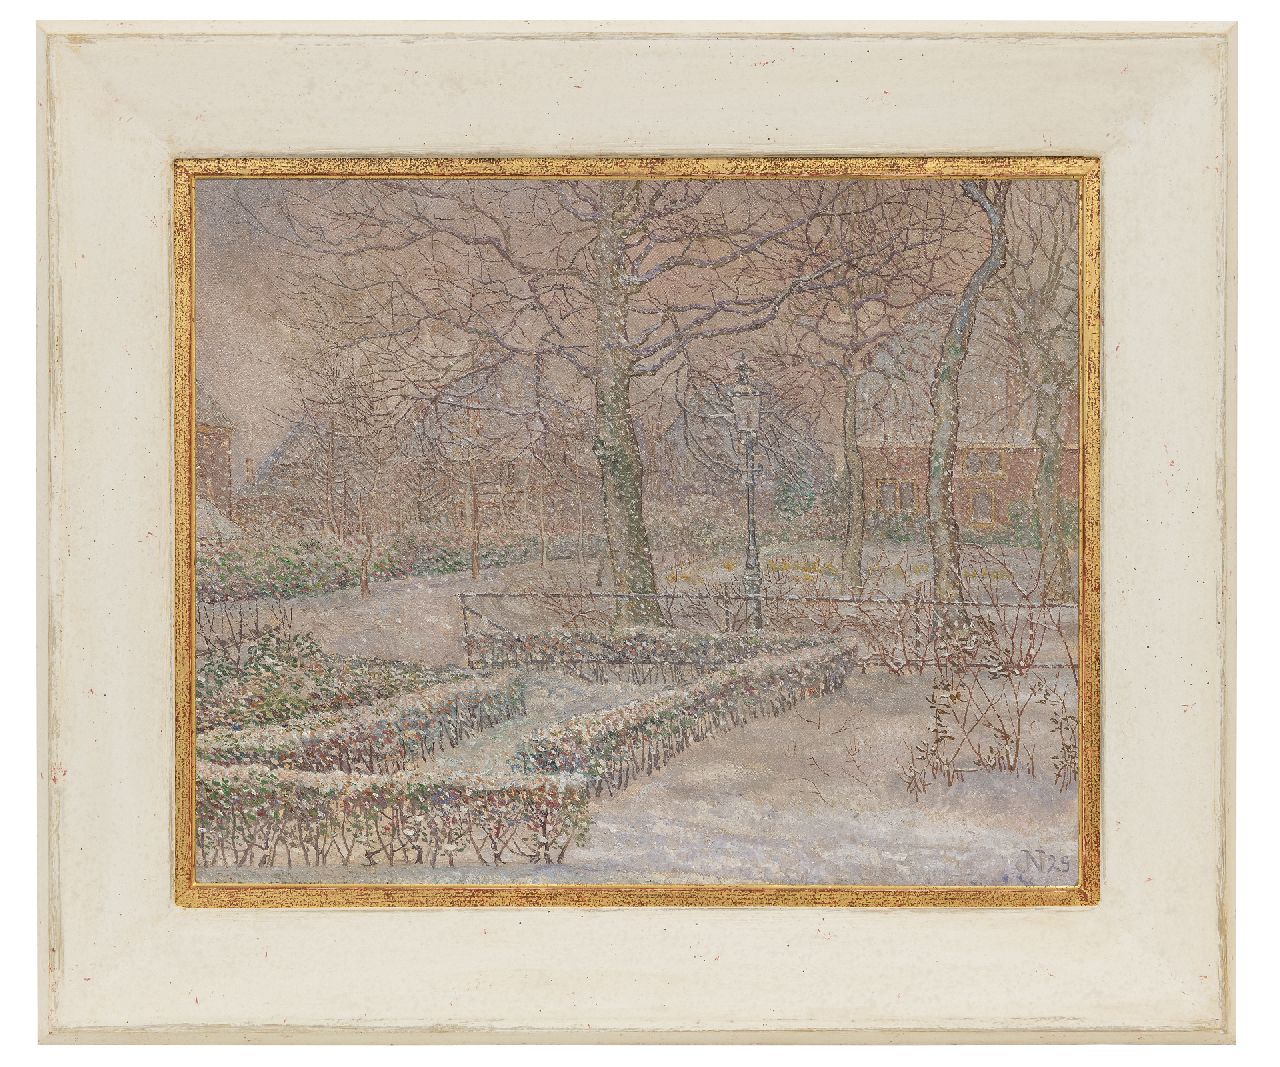 Nieweg J.  | Jakob Nieweg, Tuin van de schilder in de sneeuw, Amersfoort, olieverf op doek 40,5 x 50,5 cm, gesigneerd rechtsonder met monogram en gedateerd '29